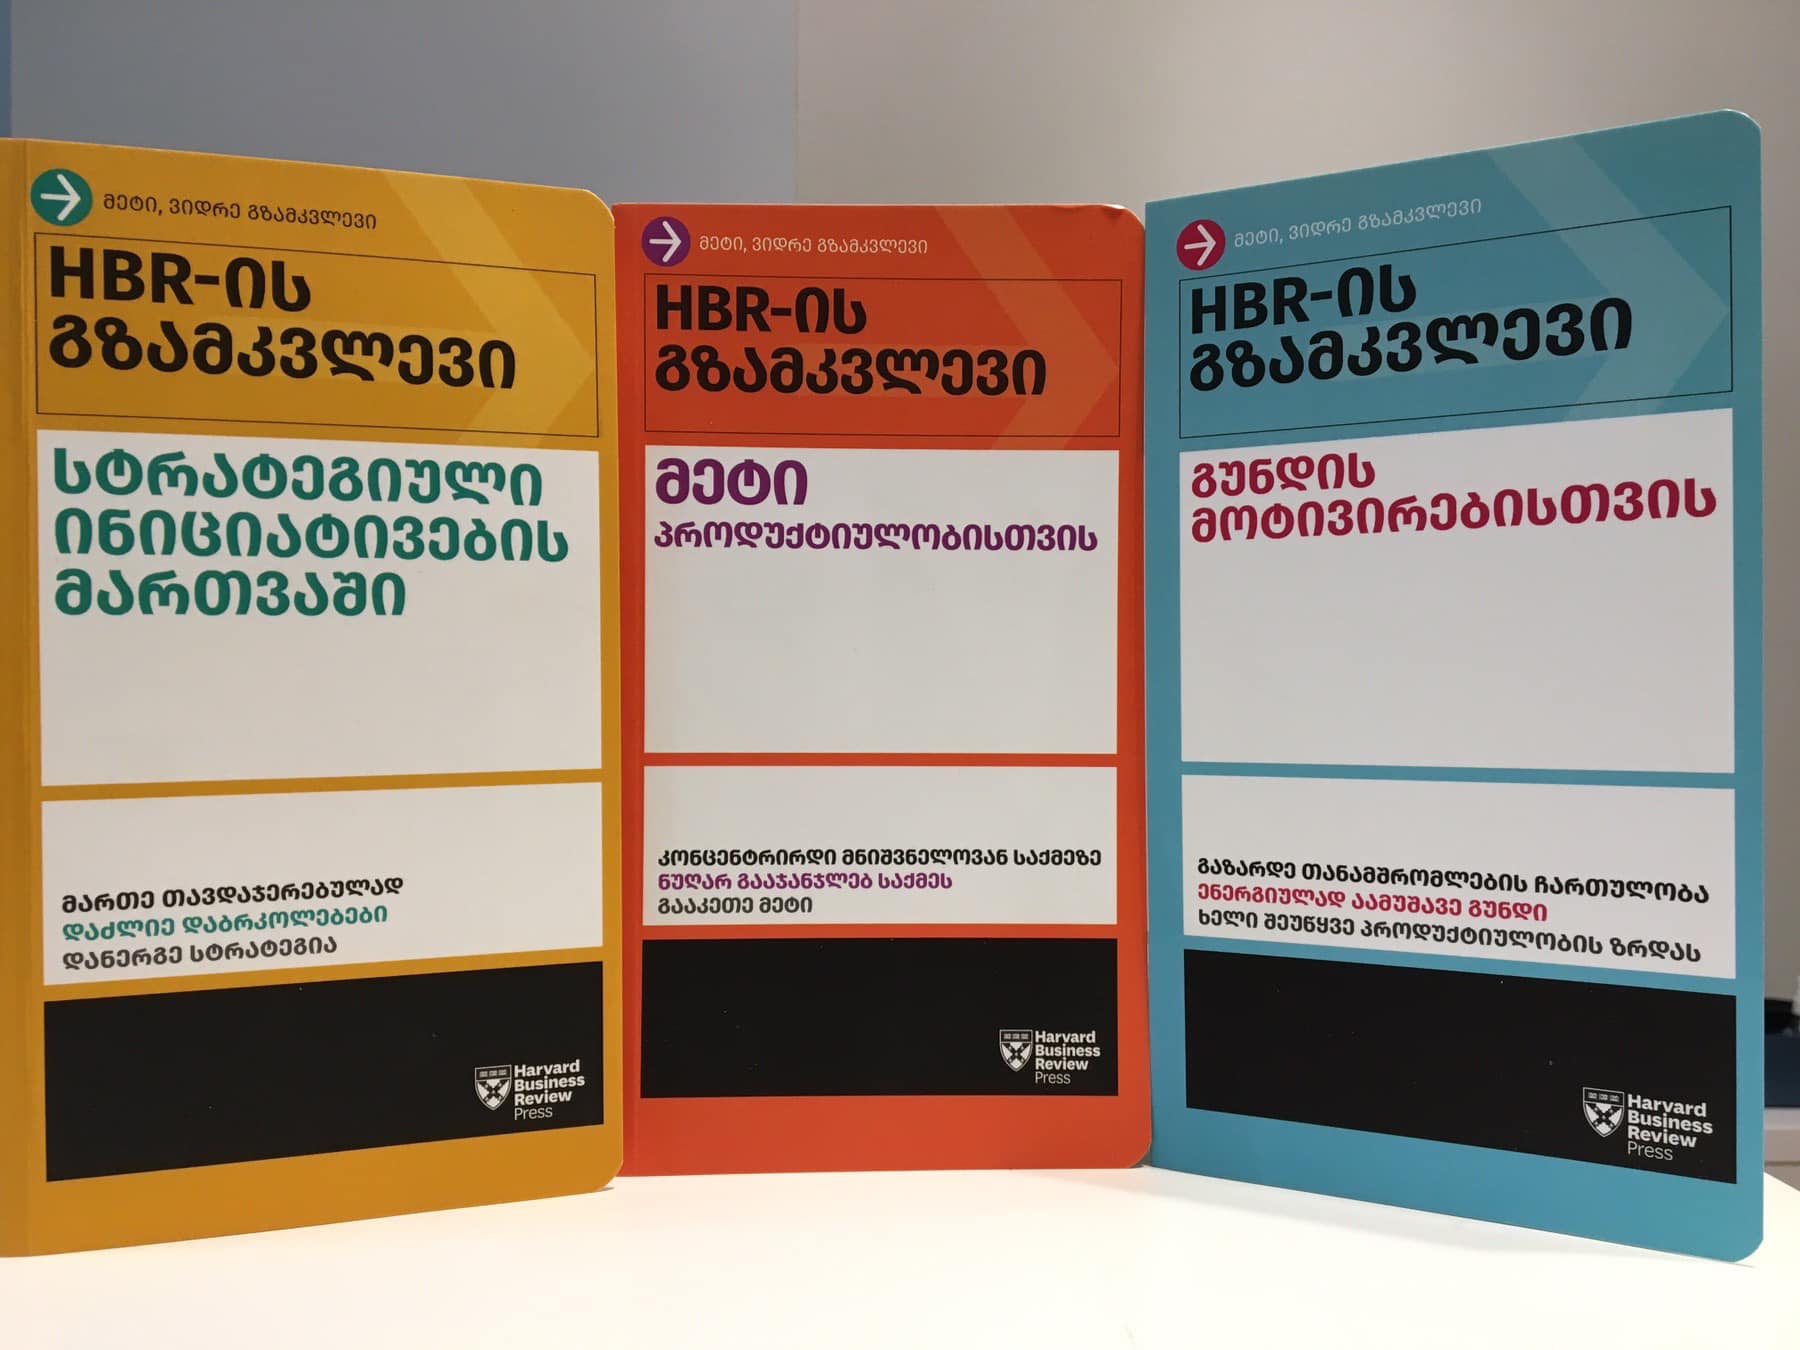 ჯეპრას მხარდაჭერით ჰარვარდის კიდევ 3 წიგნი გამოიცა ქართულ ენაზე!